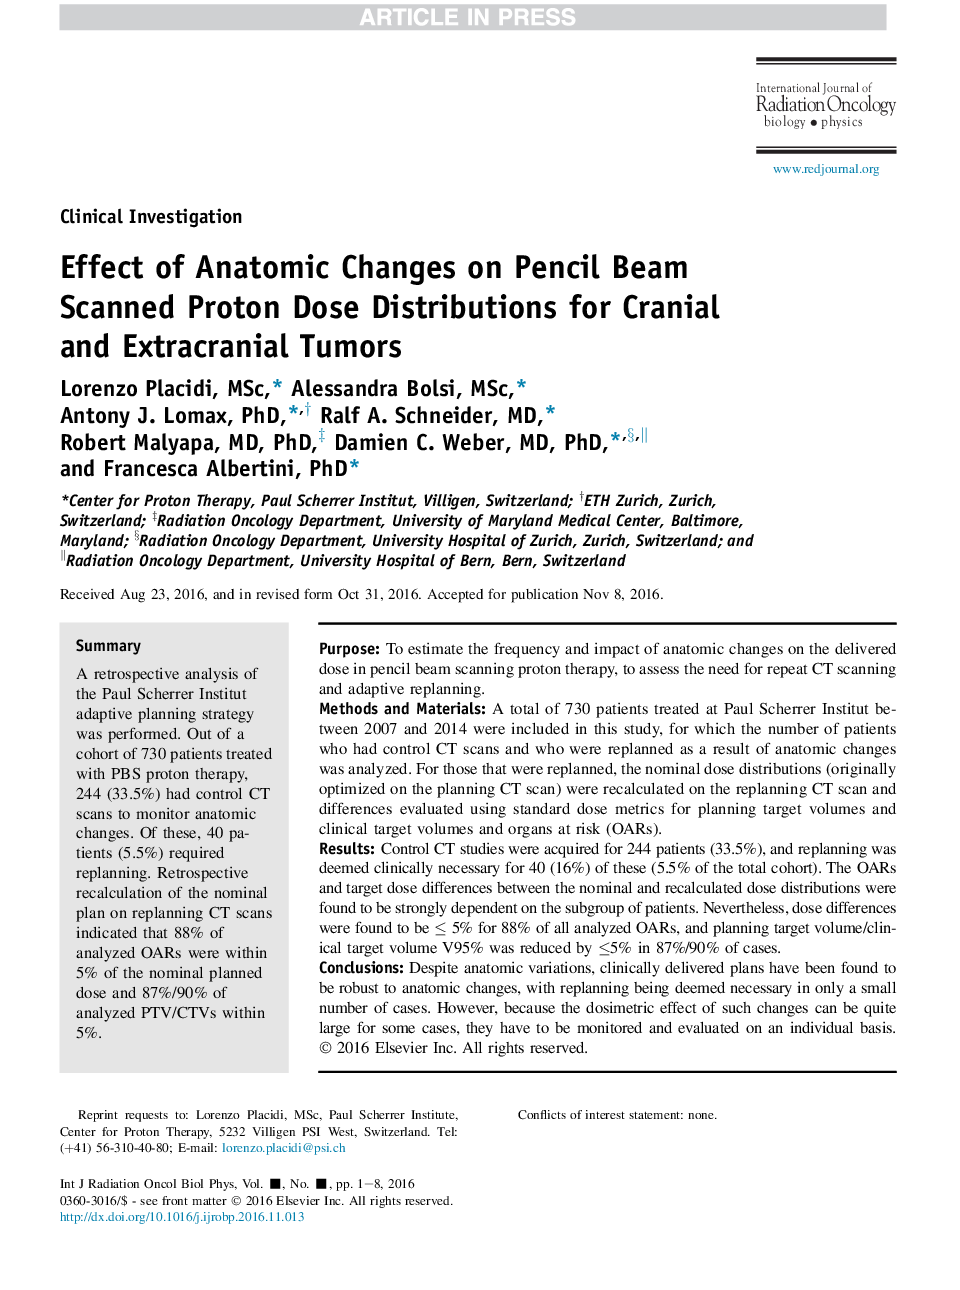 اثر تغییرات آناتومیک در توزیع دوز پروتئین اسکن شده پرتوهای مداد در تومورهای جمجمه و غده فوق کلیوی 